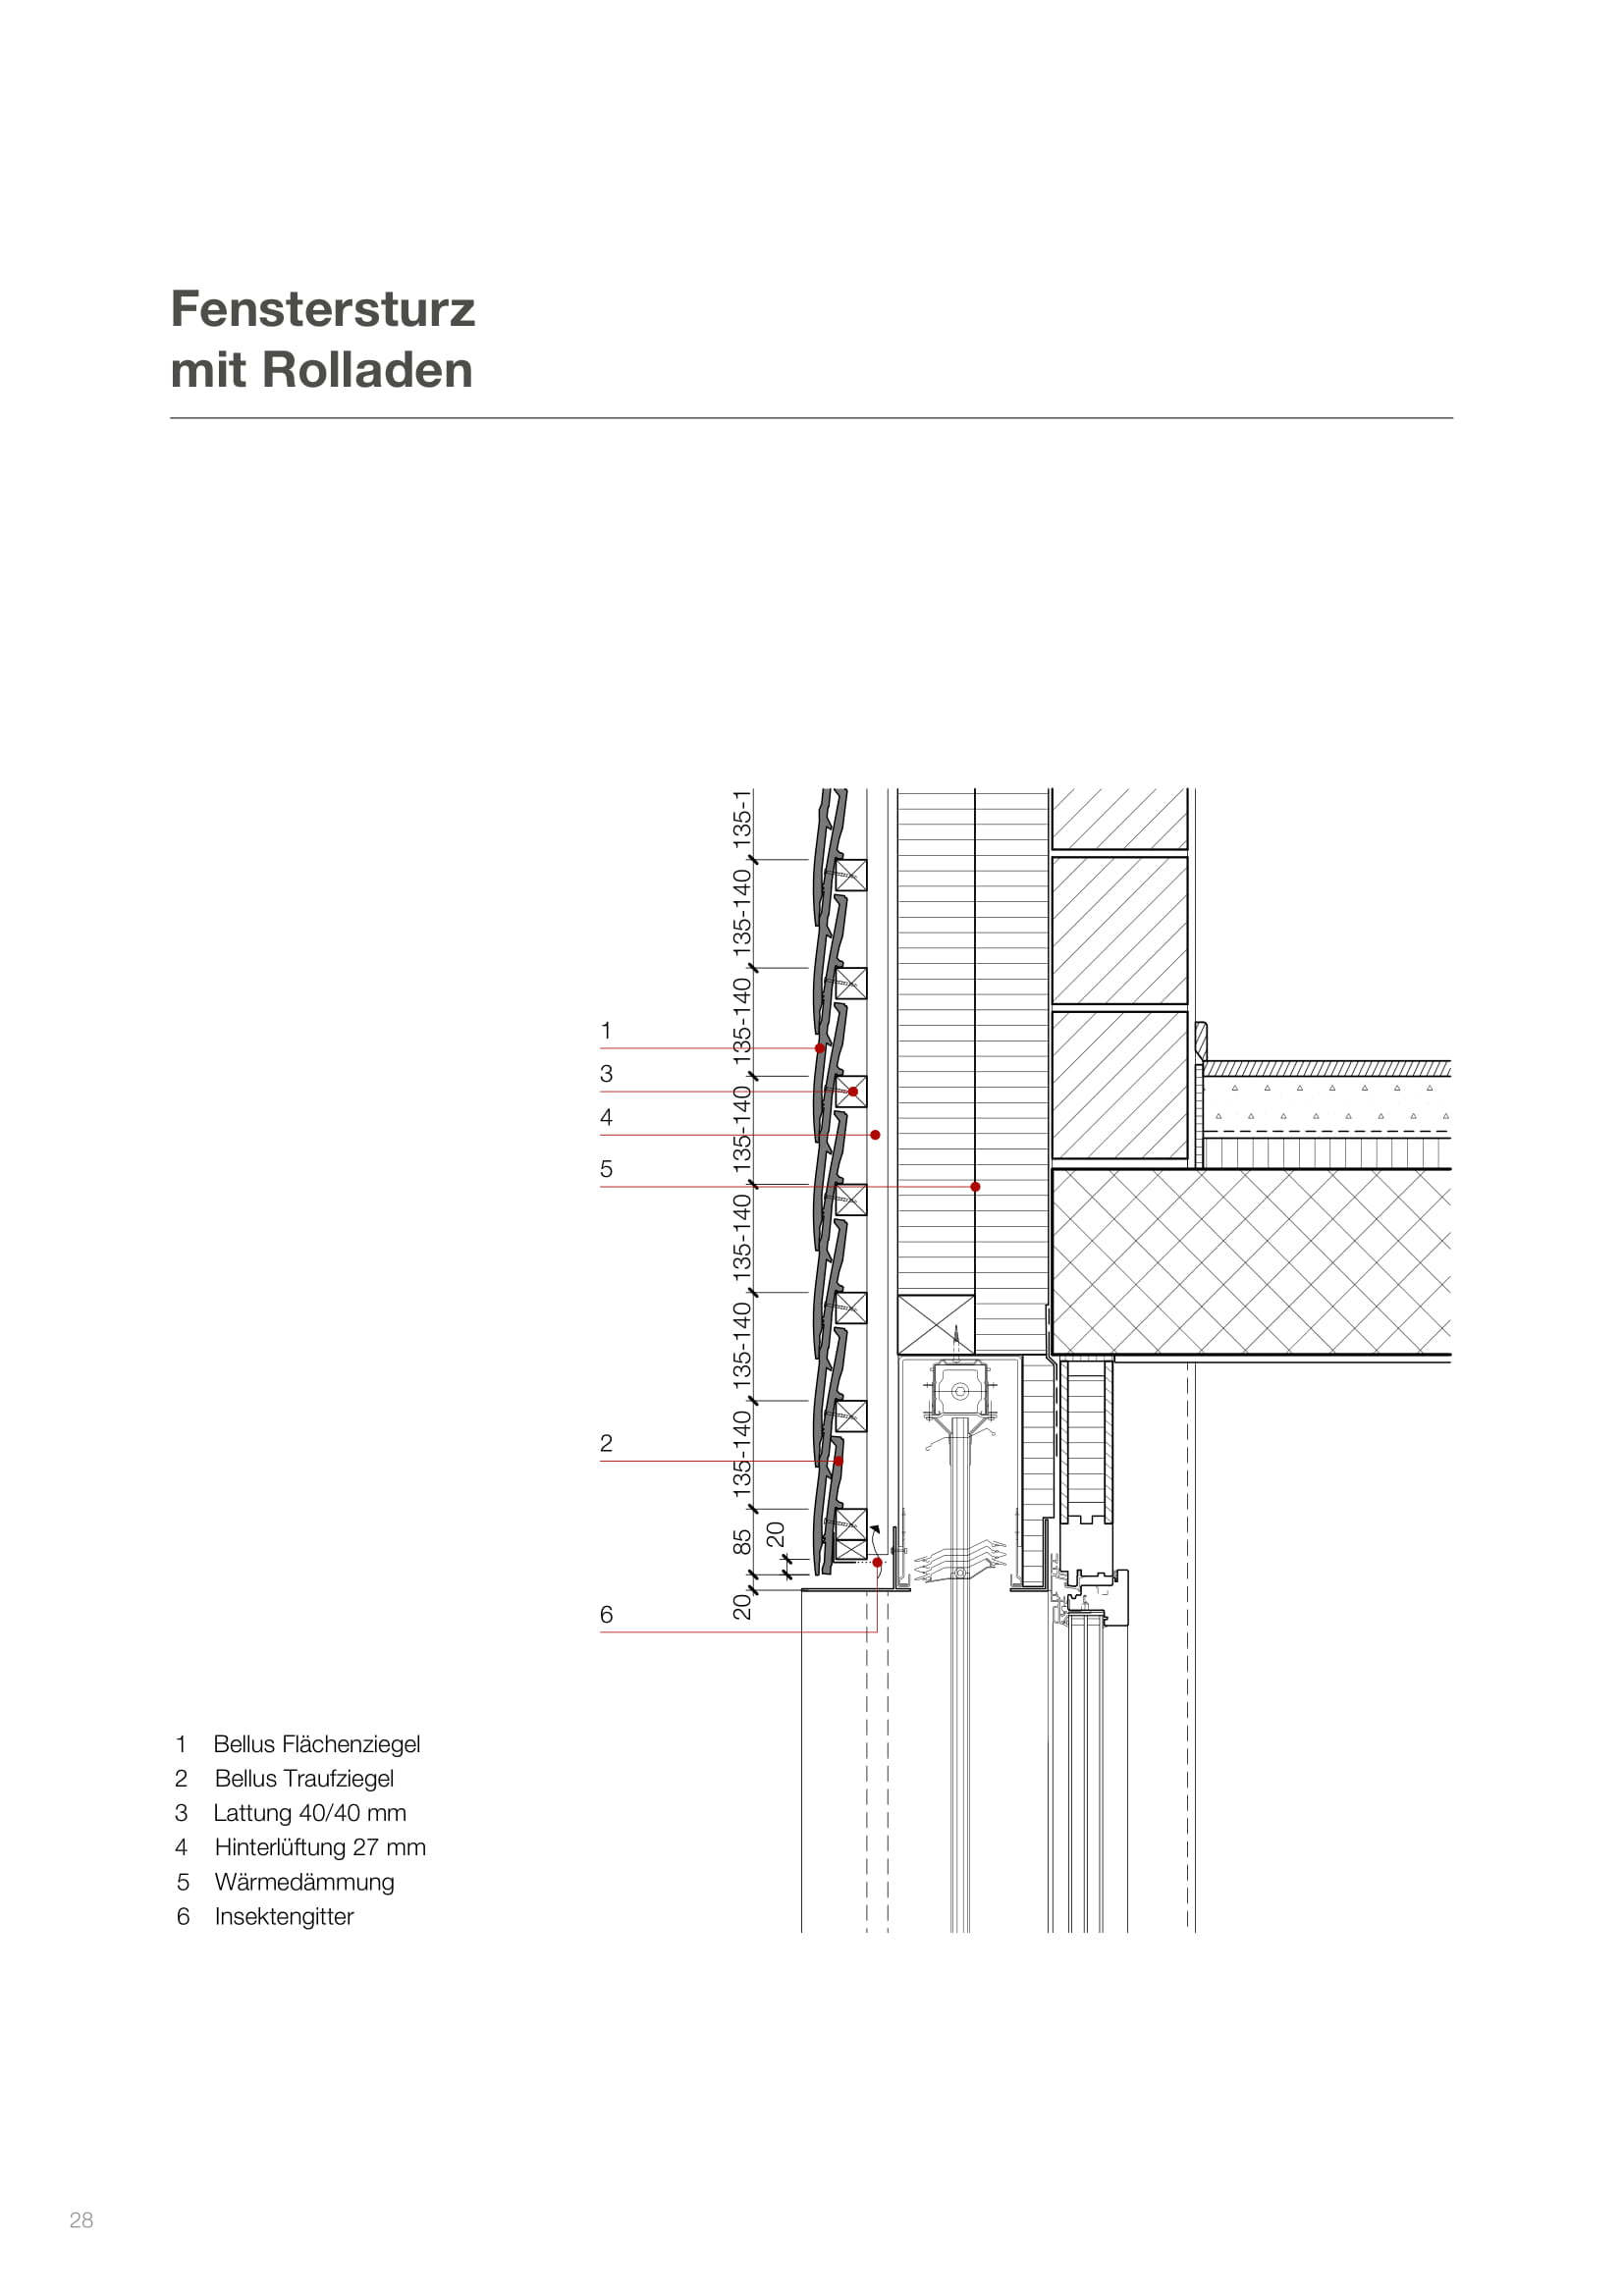 Bellus Dachziegel Planung und Ausführung -28